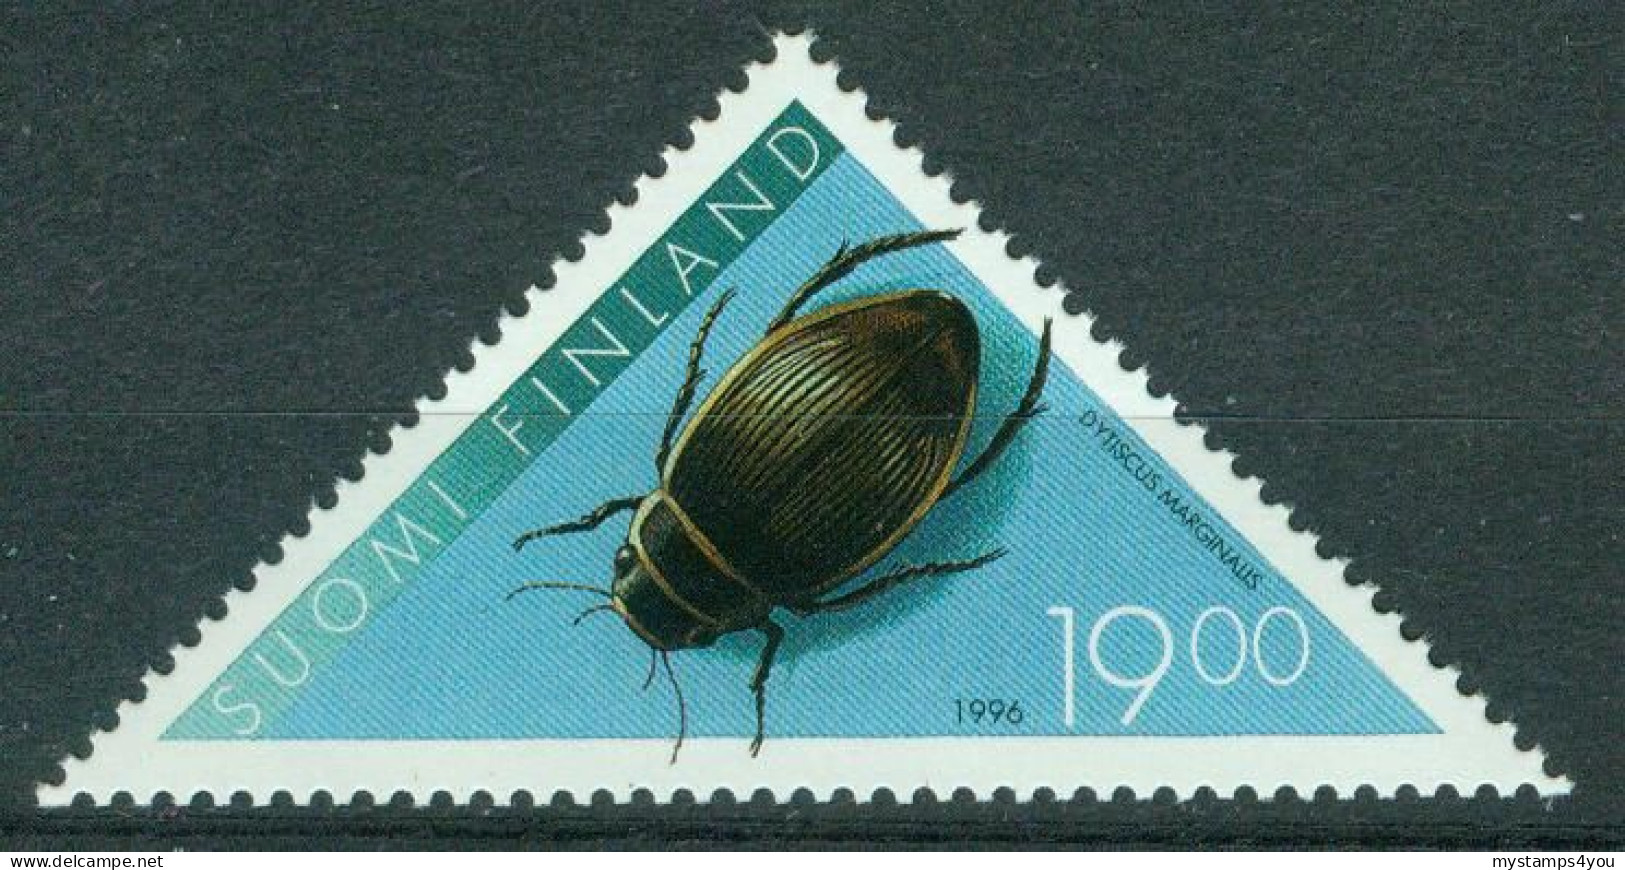 Bm Finland 1996 MiNr 1351 MNH | Great Diving Beetle #5-0216 - Ongebruikt